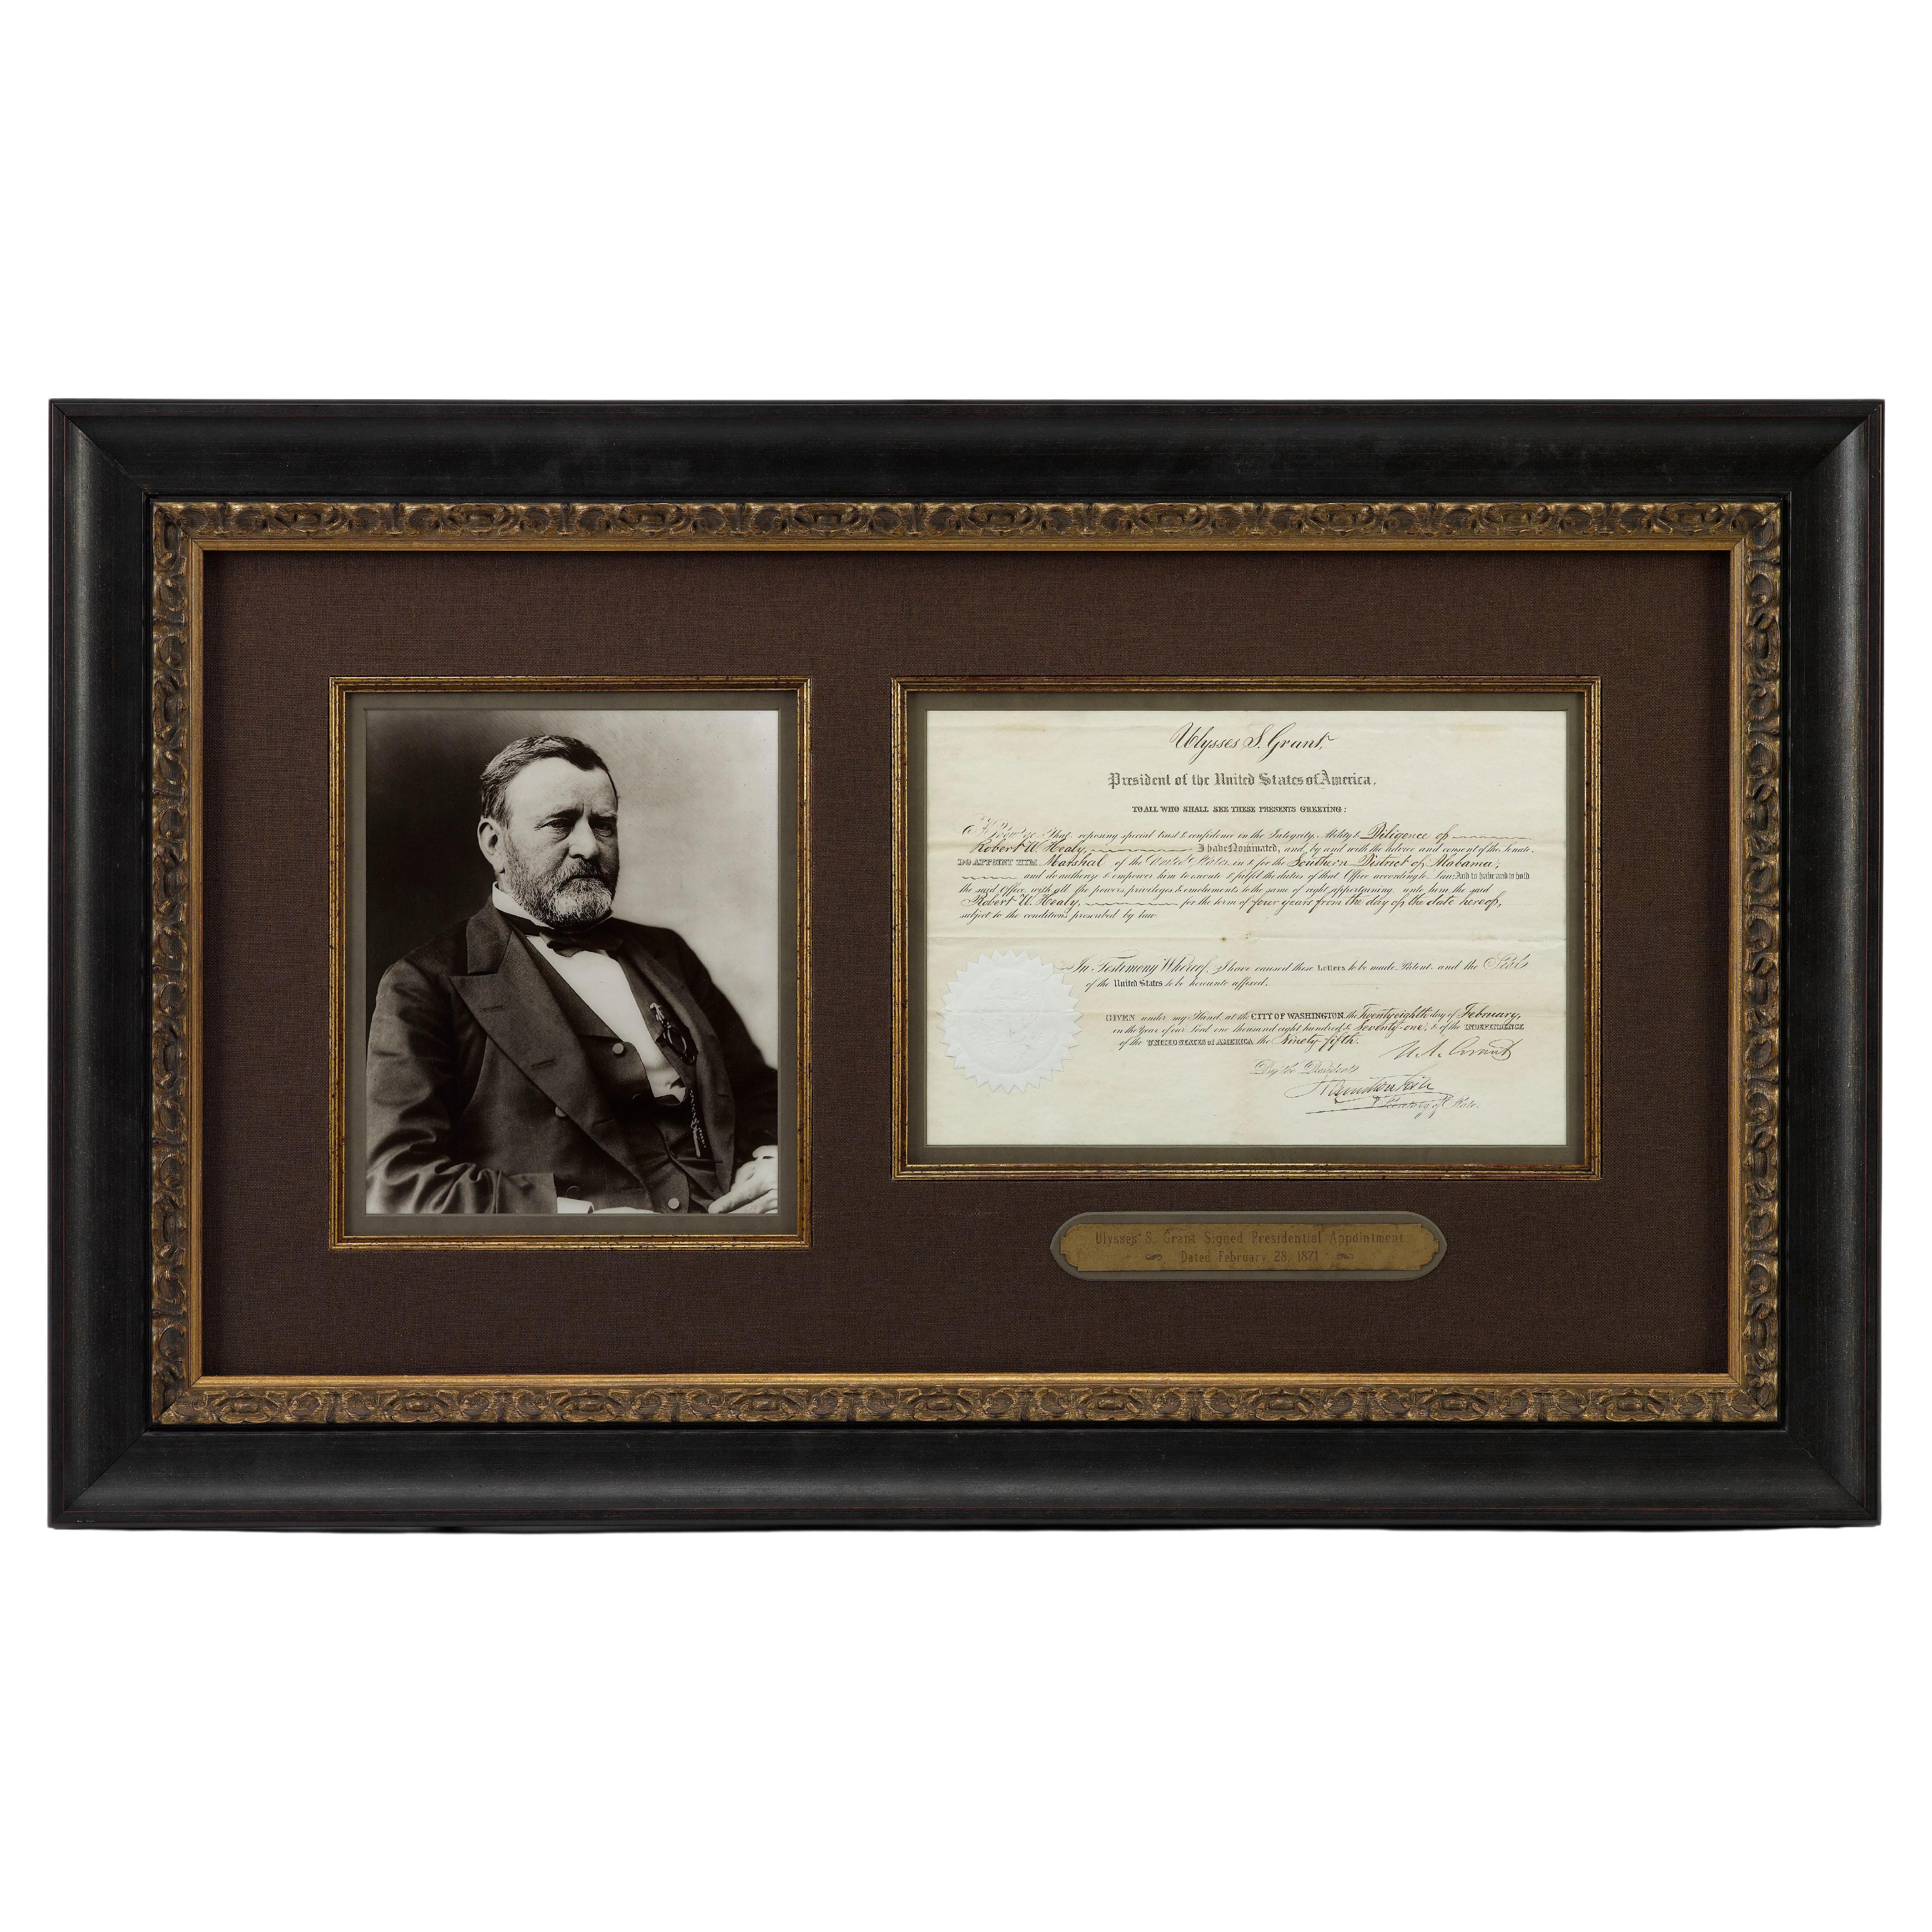 Präsentiert wird eine original unterzeichnete Ernennung von Ulysses S. Grant zum Präsidenten, datiert auf den 28. Februar 1871. Das während der ersten Amtszeit Grants unterzeichnete Dokument ernennt 